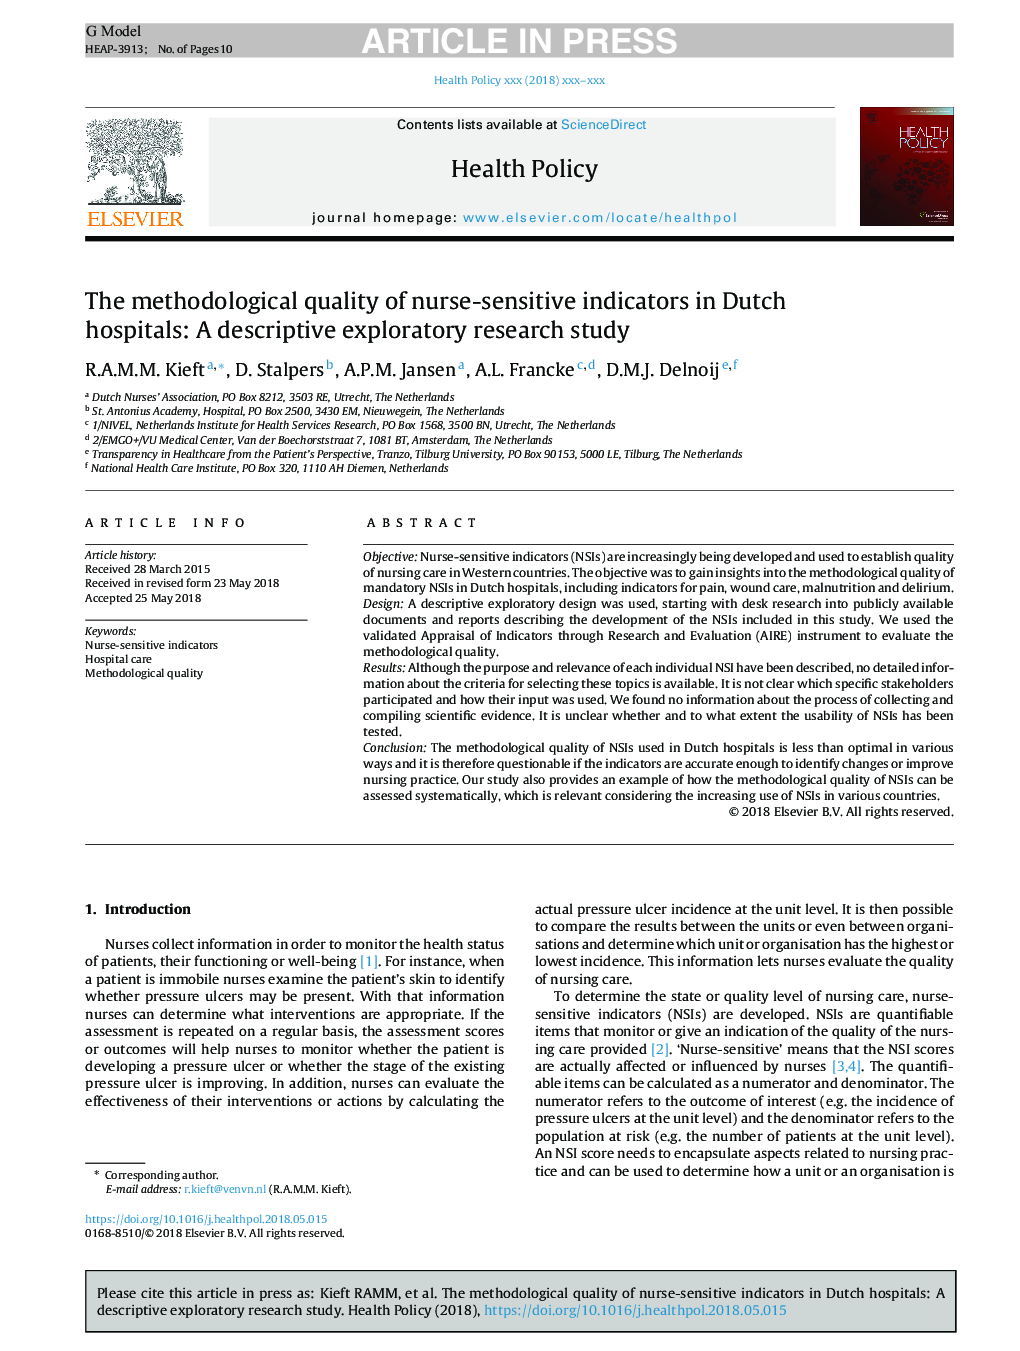 کیفیت روش شناختی شاخص های حساس پرستاری در بیمارستان های هلند: یک مطالعه توصیفی اکتشافی 